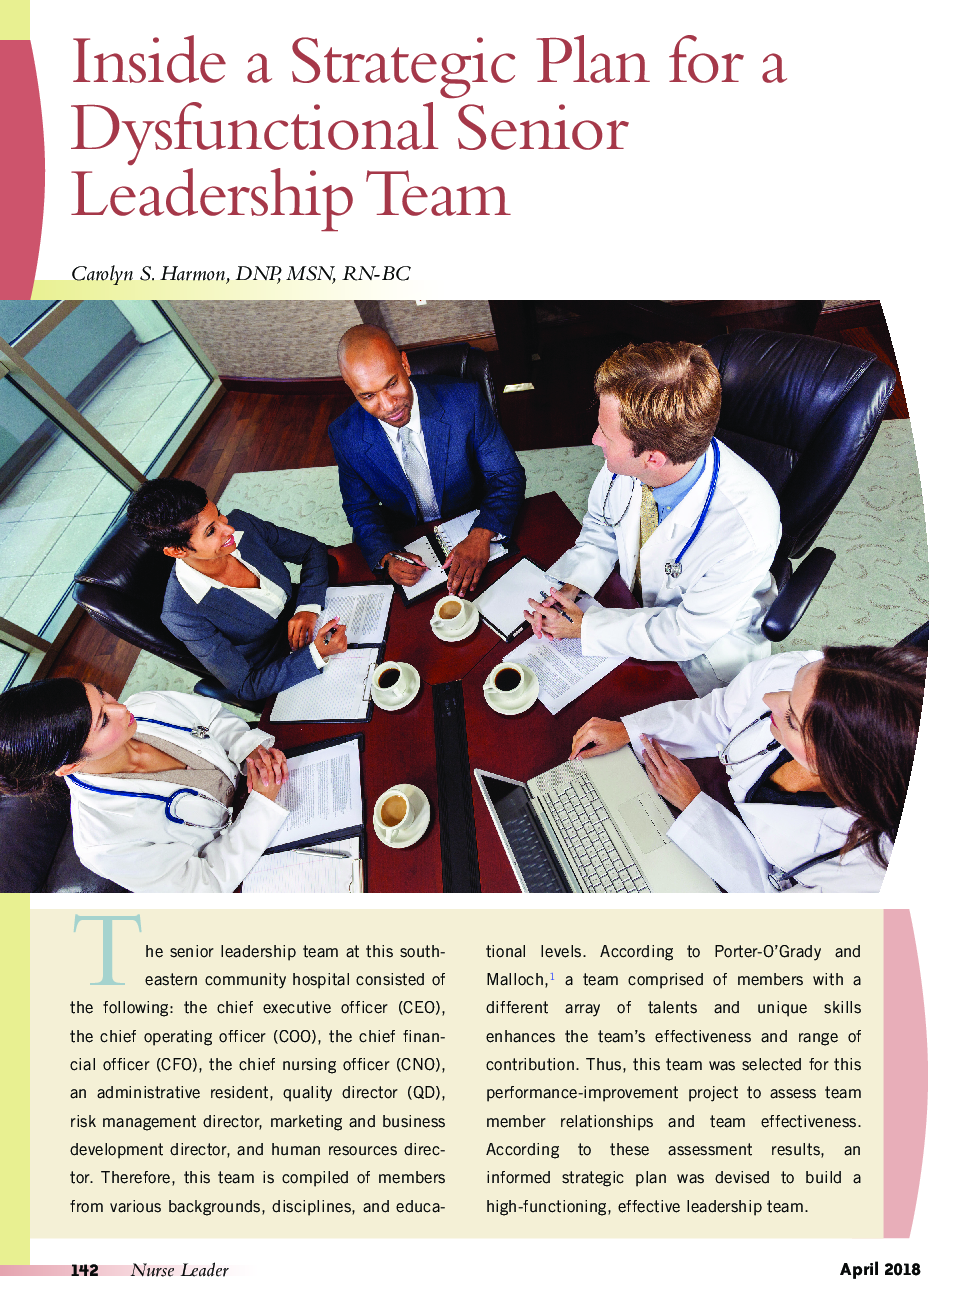 درون یک برنامه ی استراتژیک برای یک تیم رهبری ارشد ناکارآمد